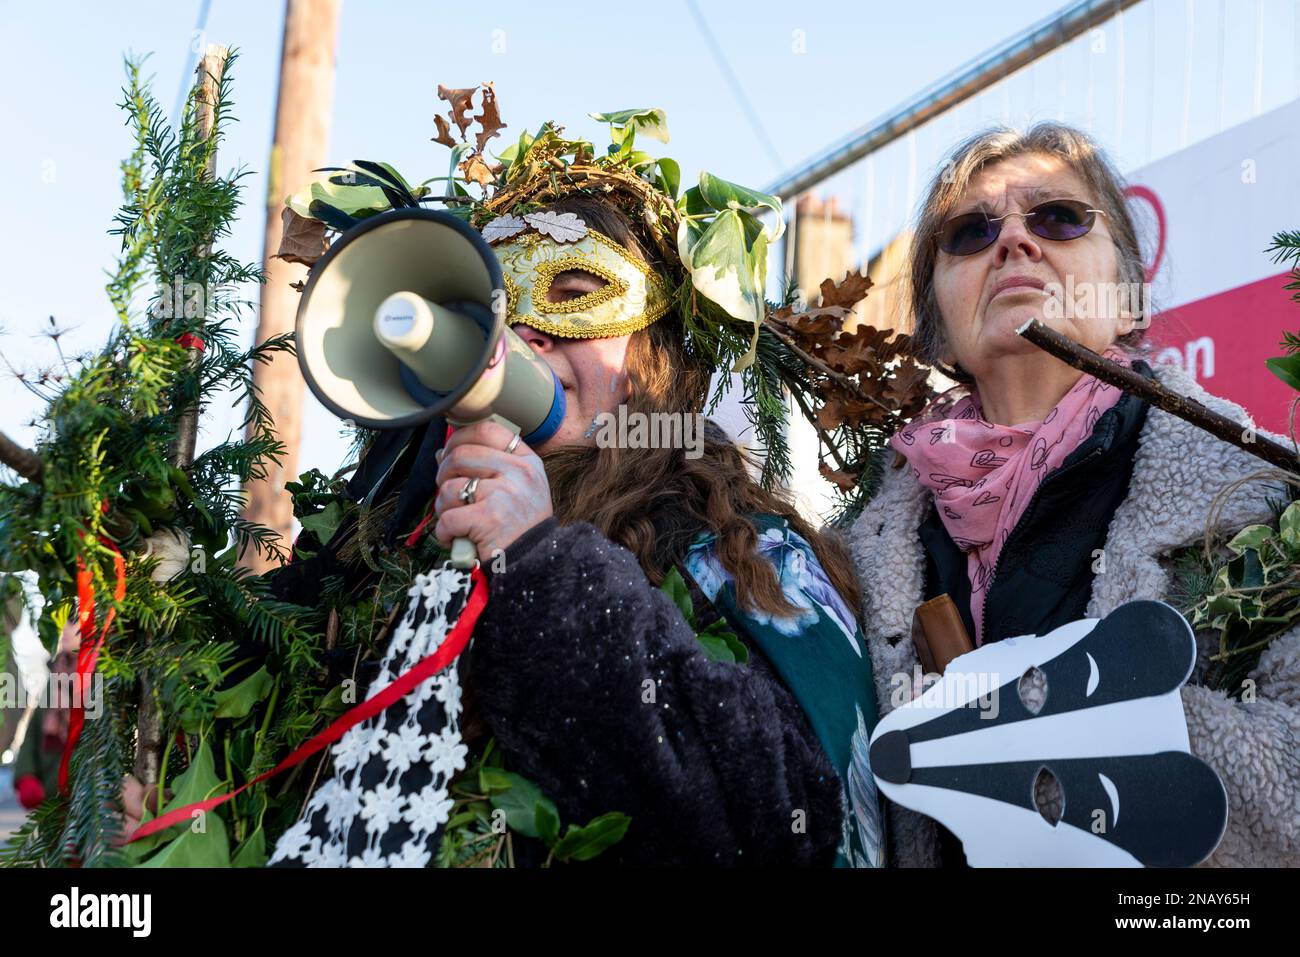 Weibliche Demonstranten sahen, wie holt Farm Oak Tree nach ausgedehnten Protesten abgeschnitten wurde. Rochford, Essex, Großbritannien. Frauen protestieren Stockfoto